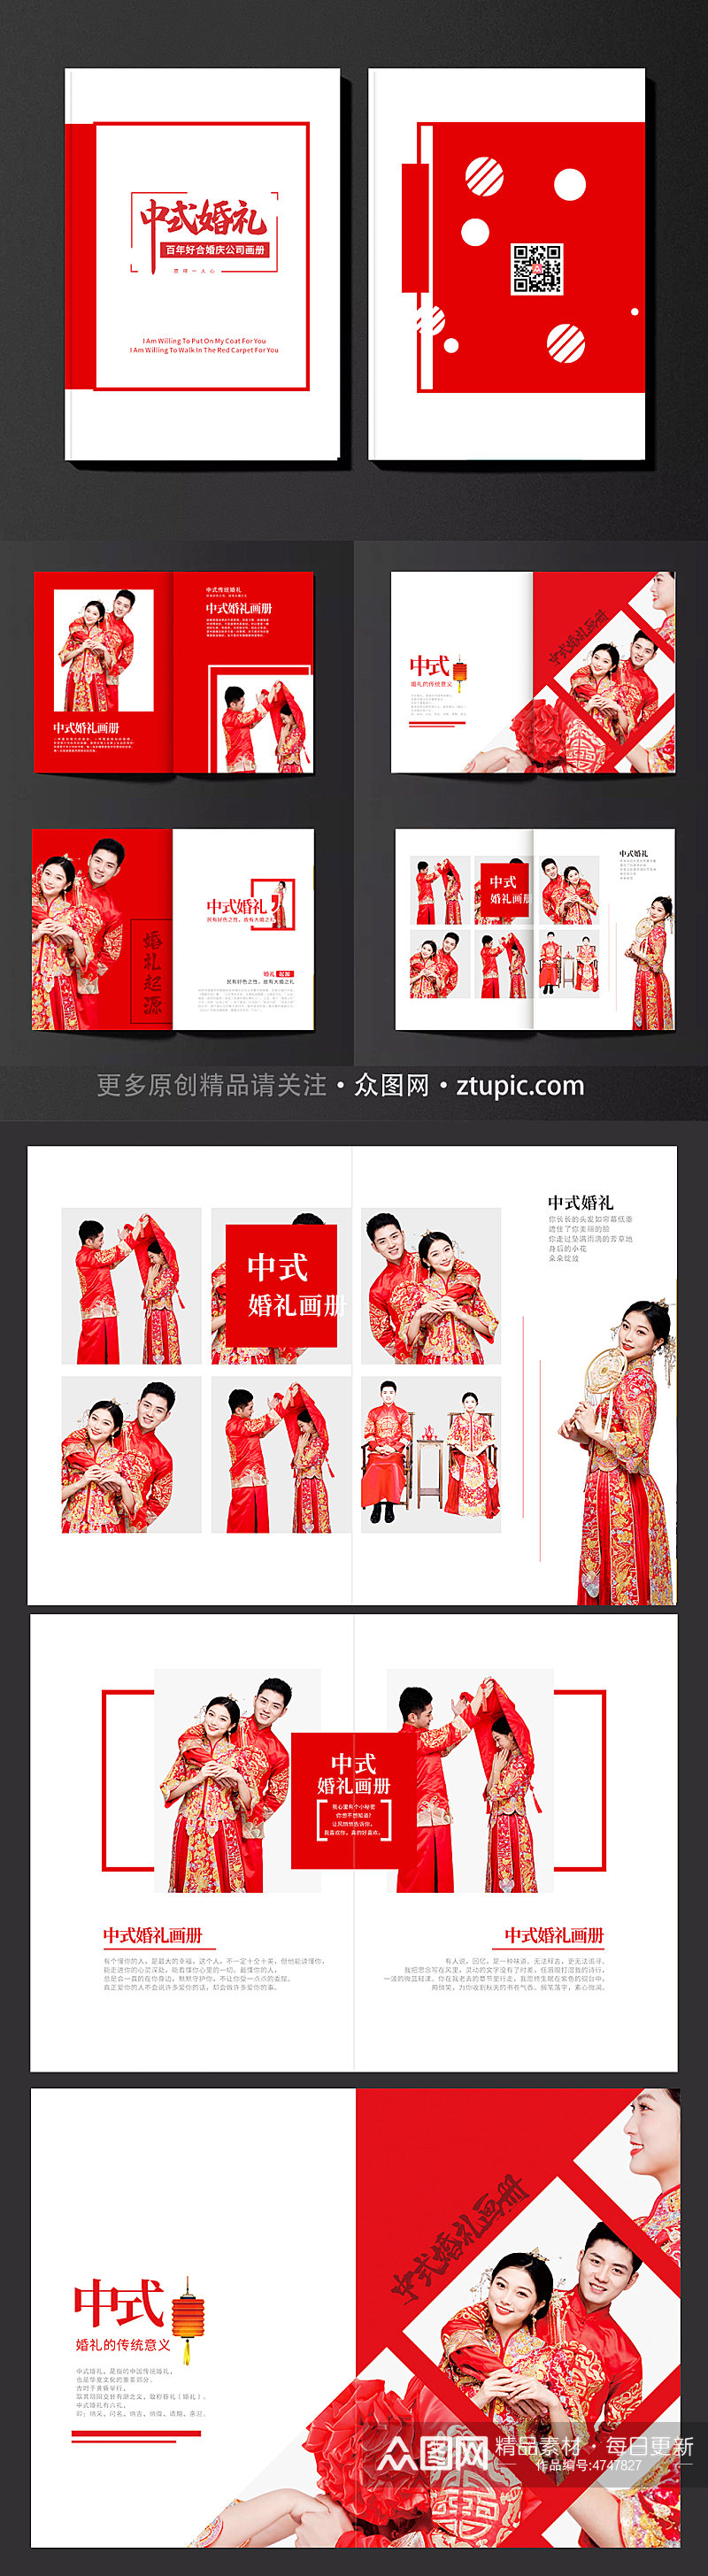 简约中国风中式婚礼画册素材